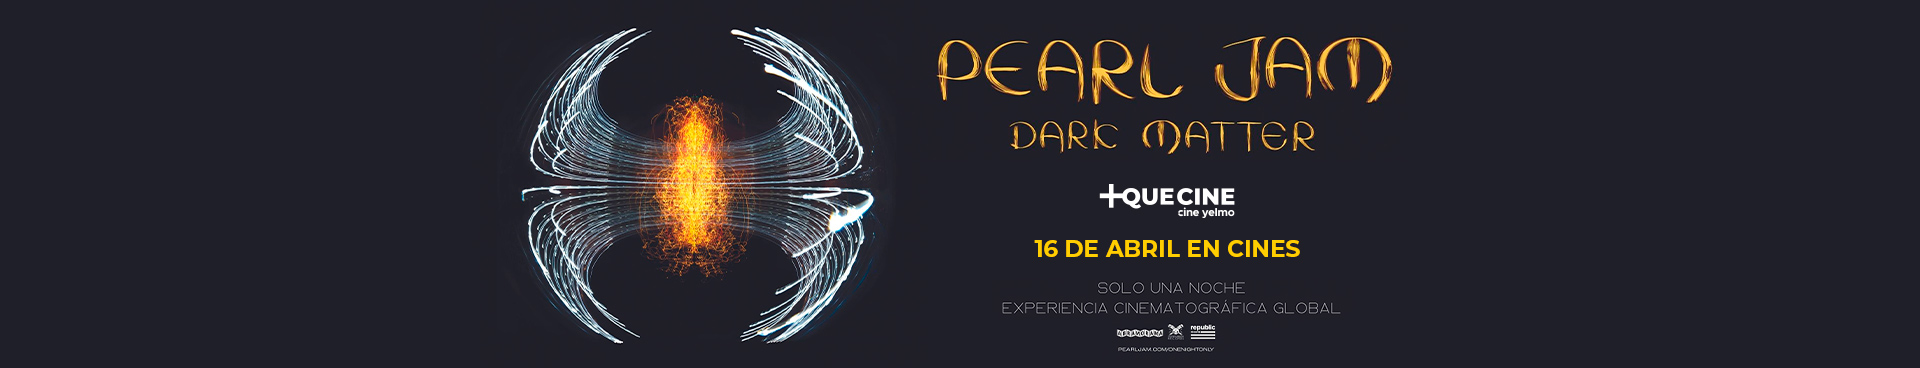  Pearl Jam - Dark Matter